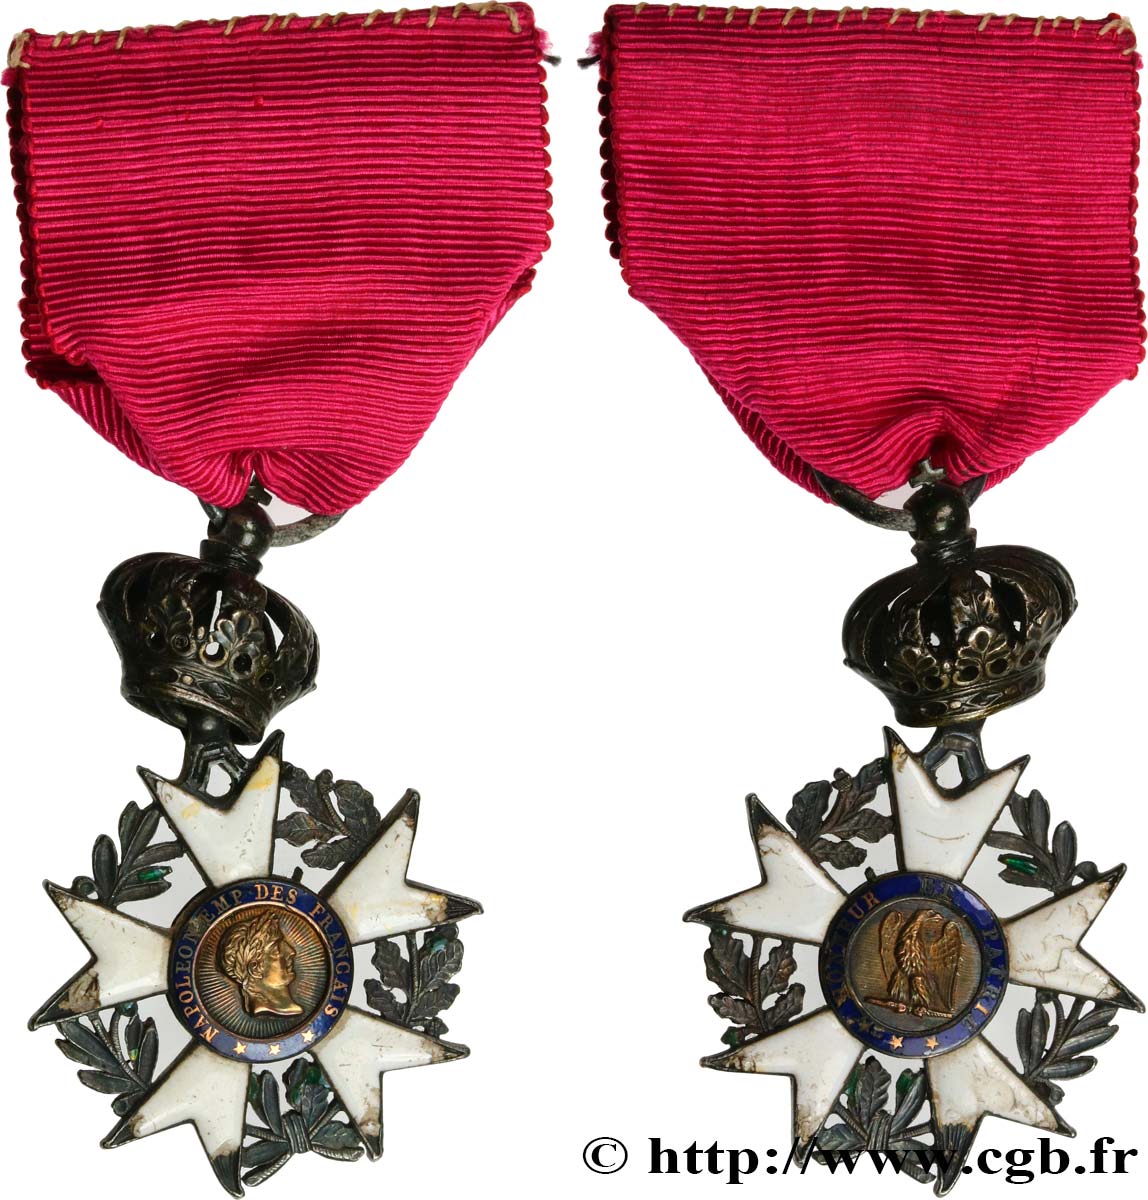 FIRST FRENCH EMPIRE. Napoléon Emperor bare head - Republican calendar Médaille, Chevalier de Légion d’honneur XF